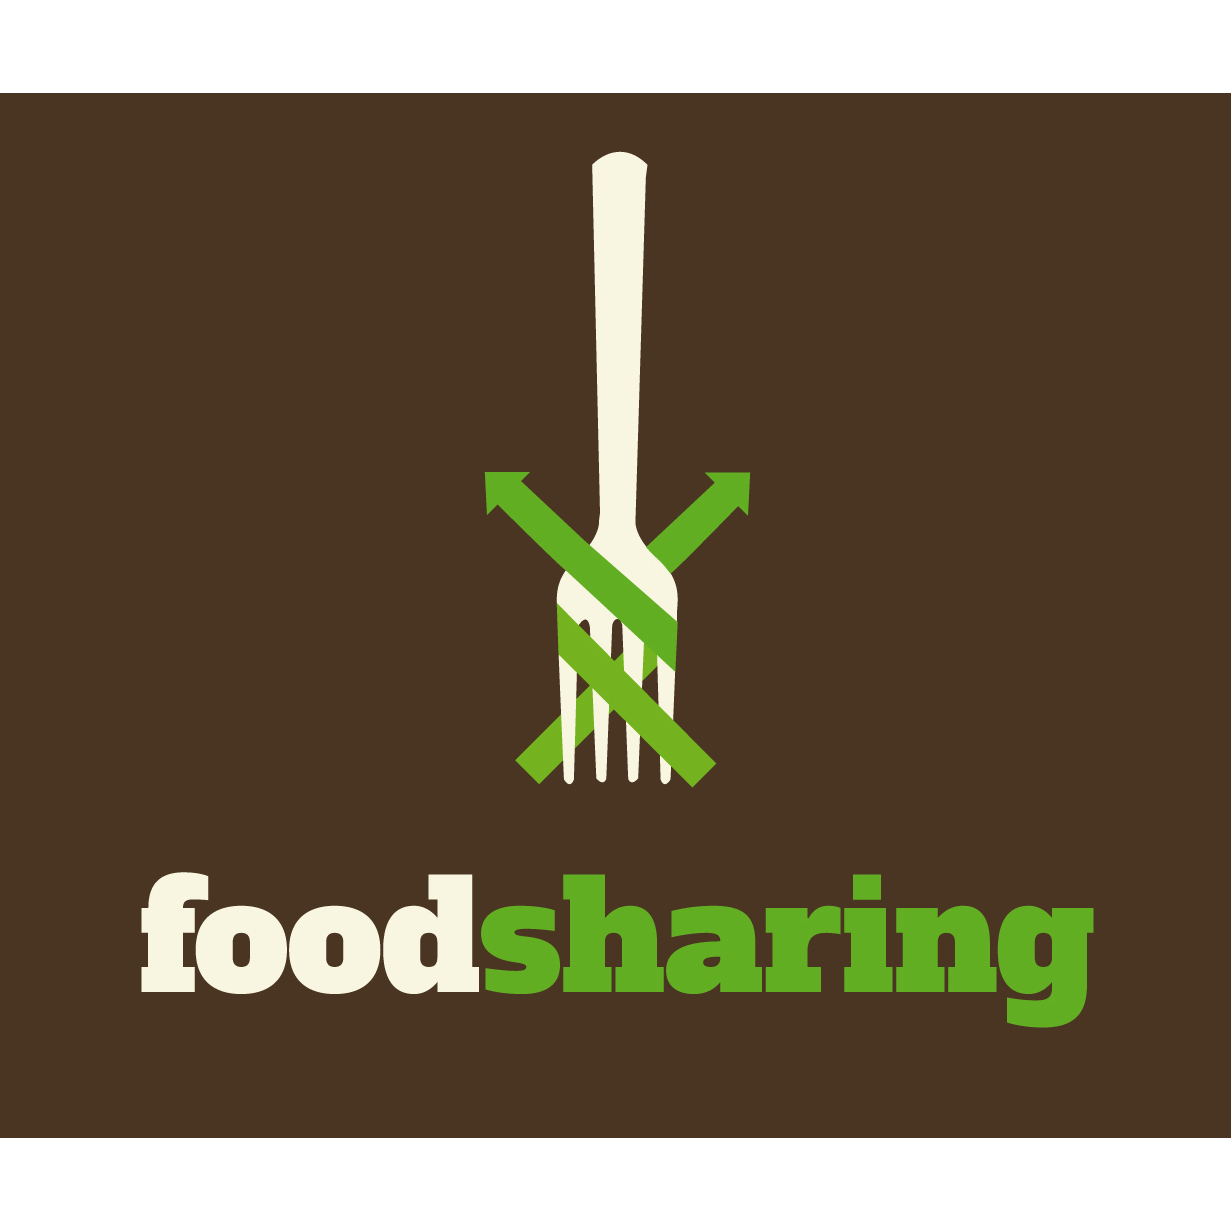 Die Foodsharing-Bewegung